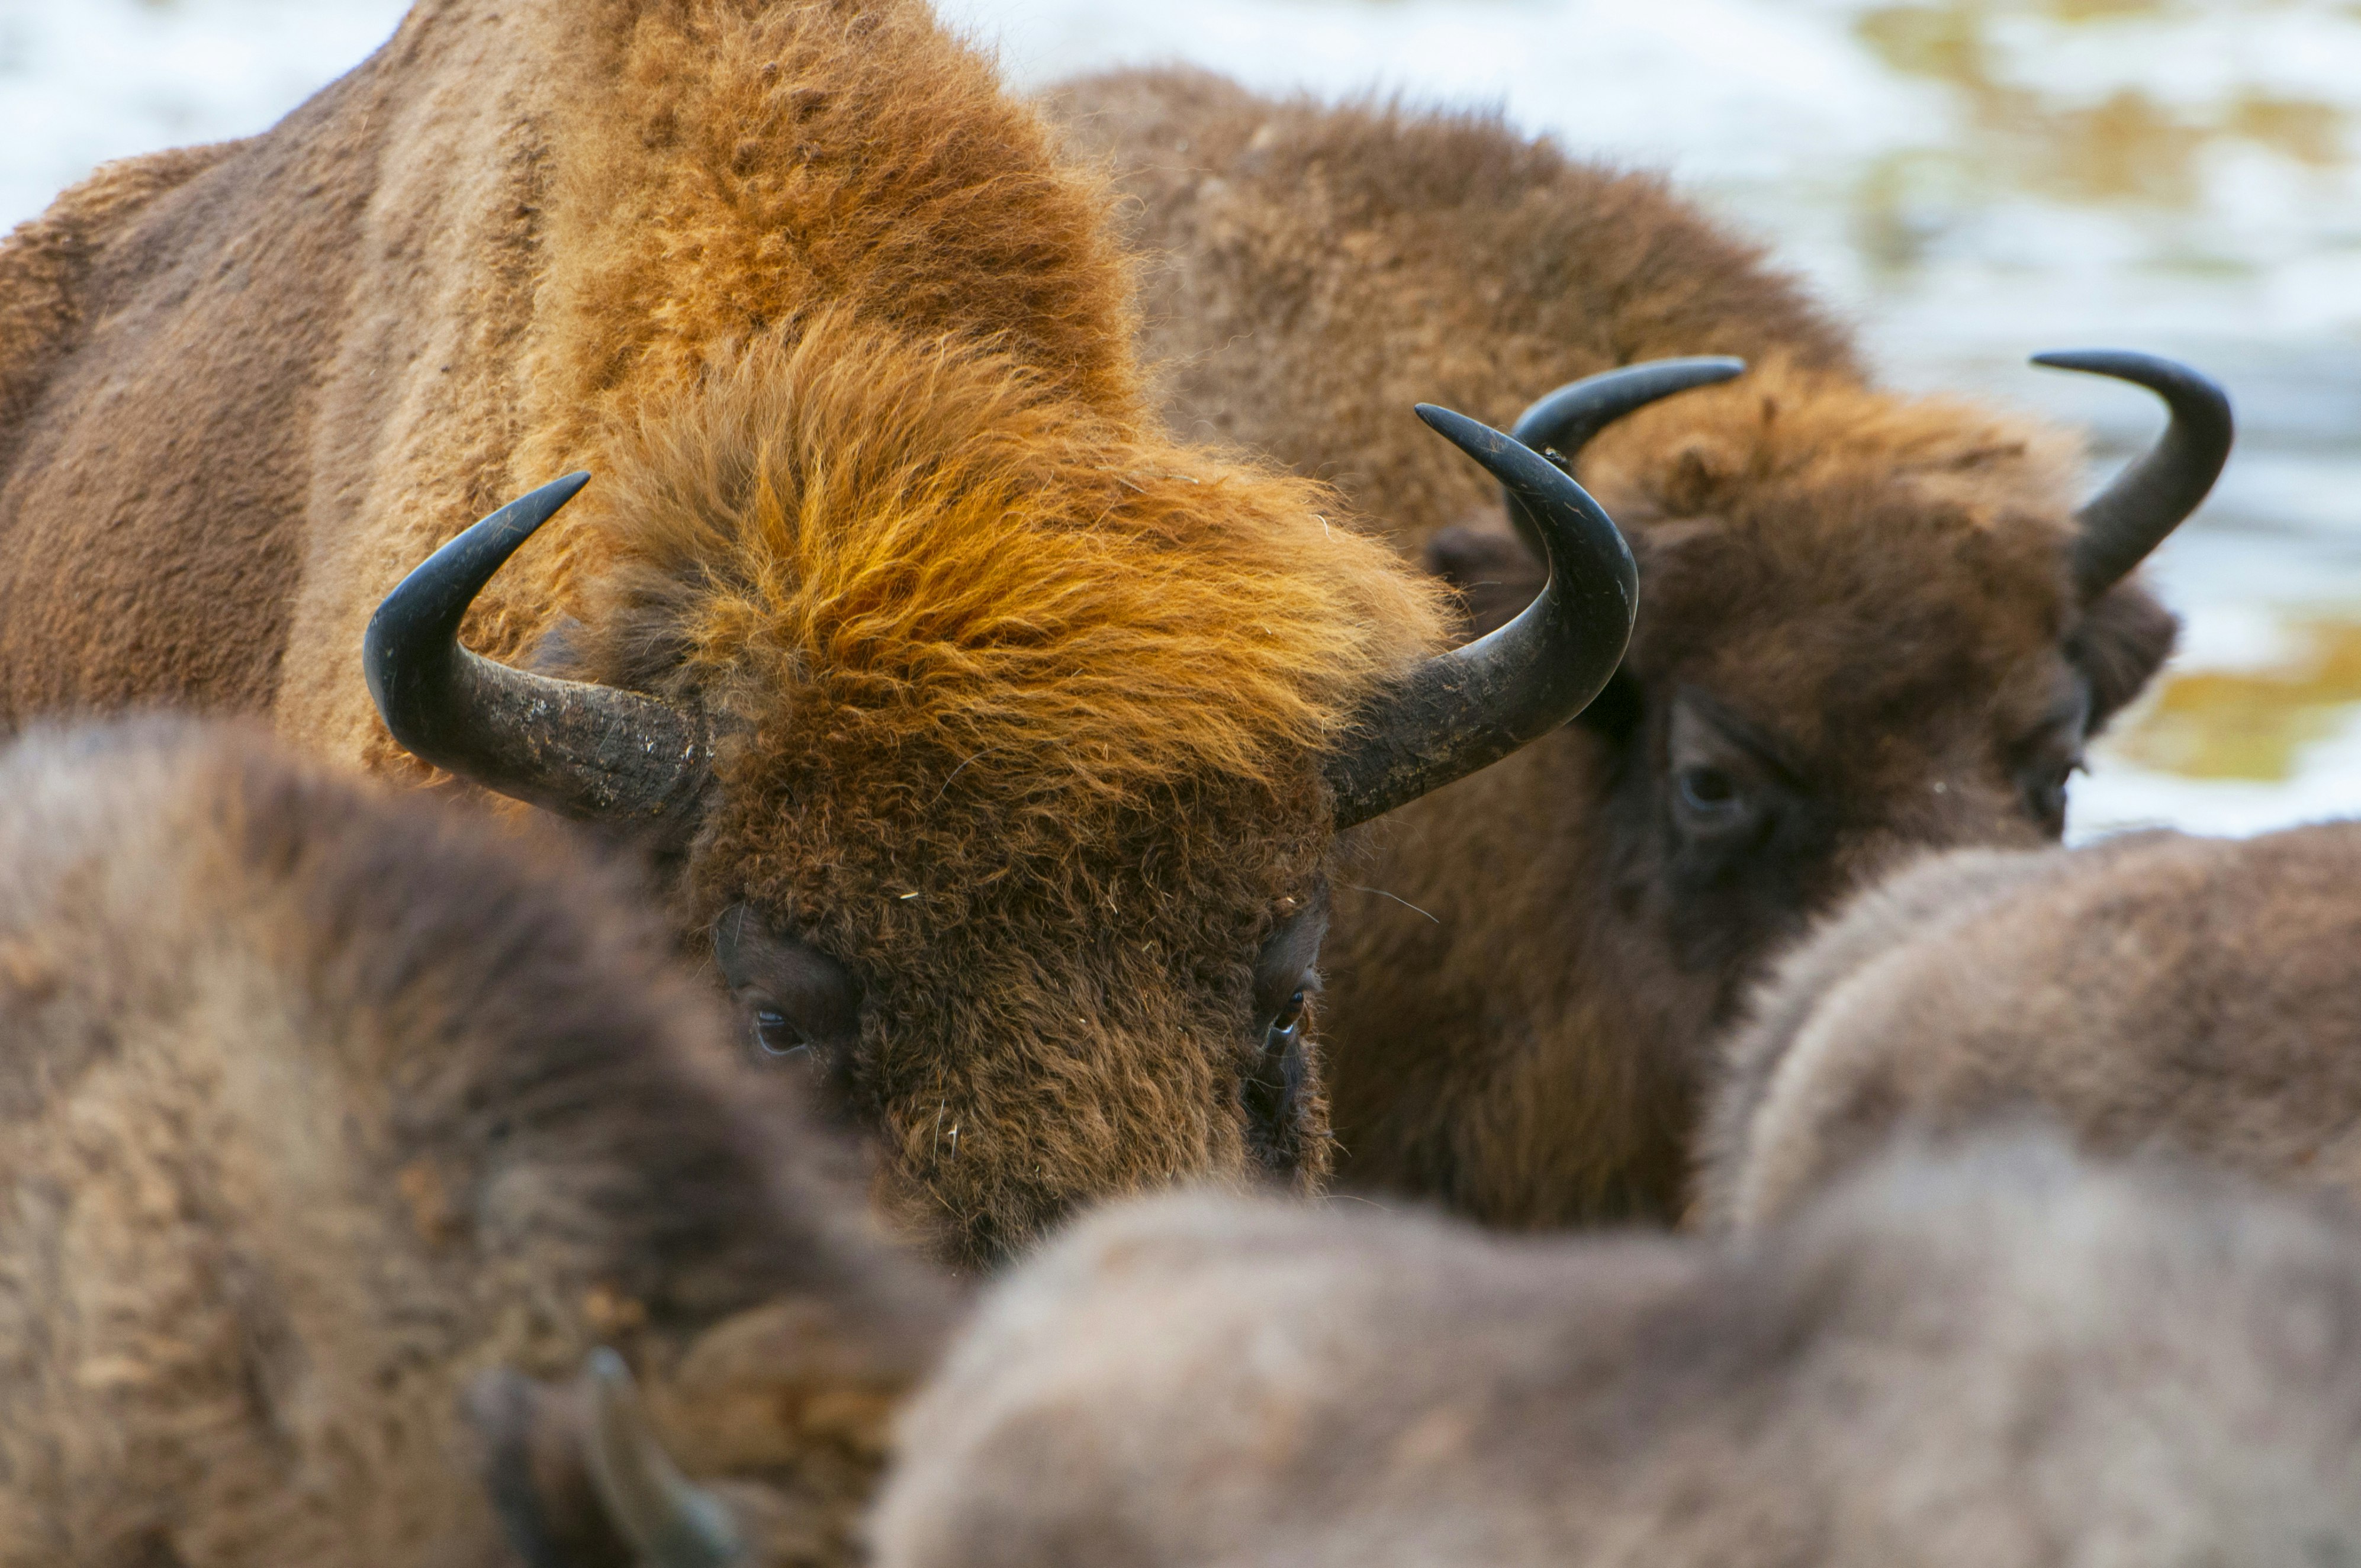 European bison, wisent (Bison bonasus), herd in forest, Bialowieza Forest National Park, Poland.